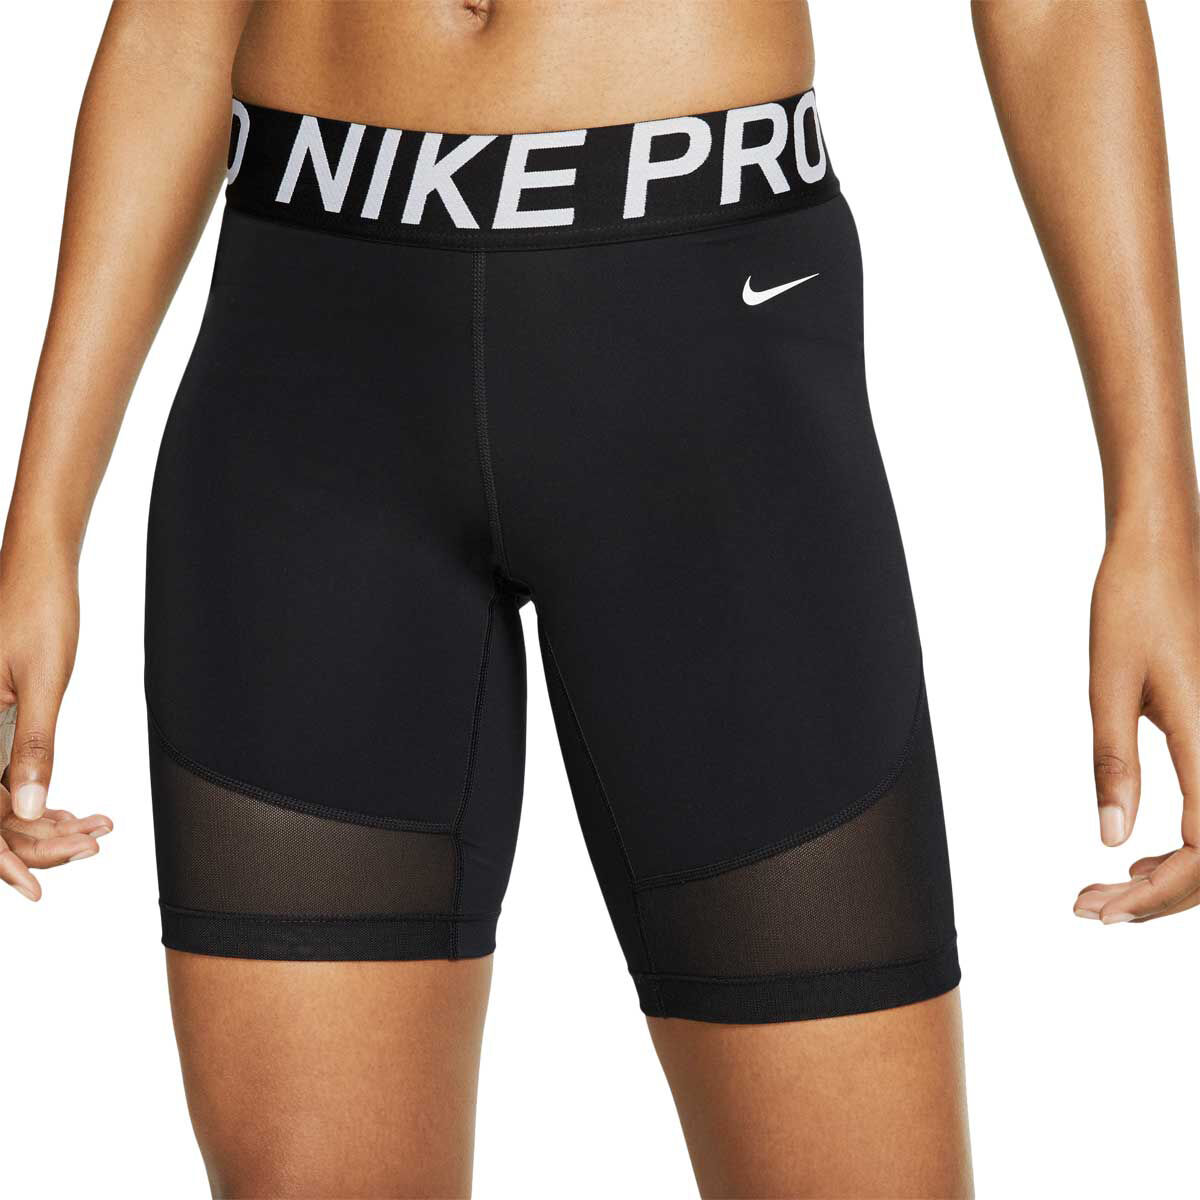 nike pro shorts lengths